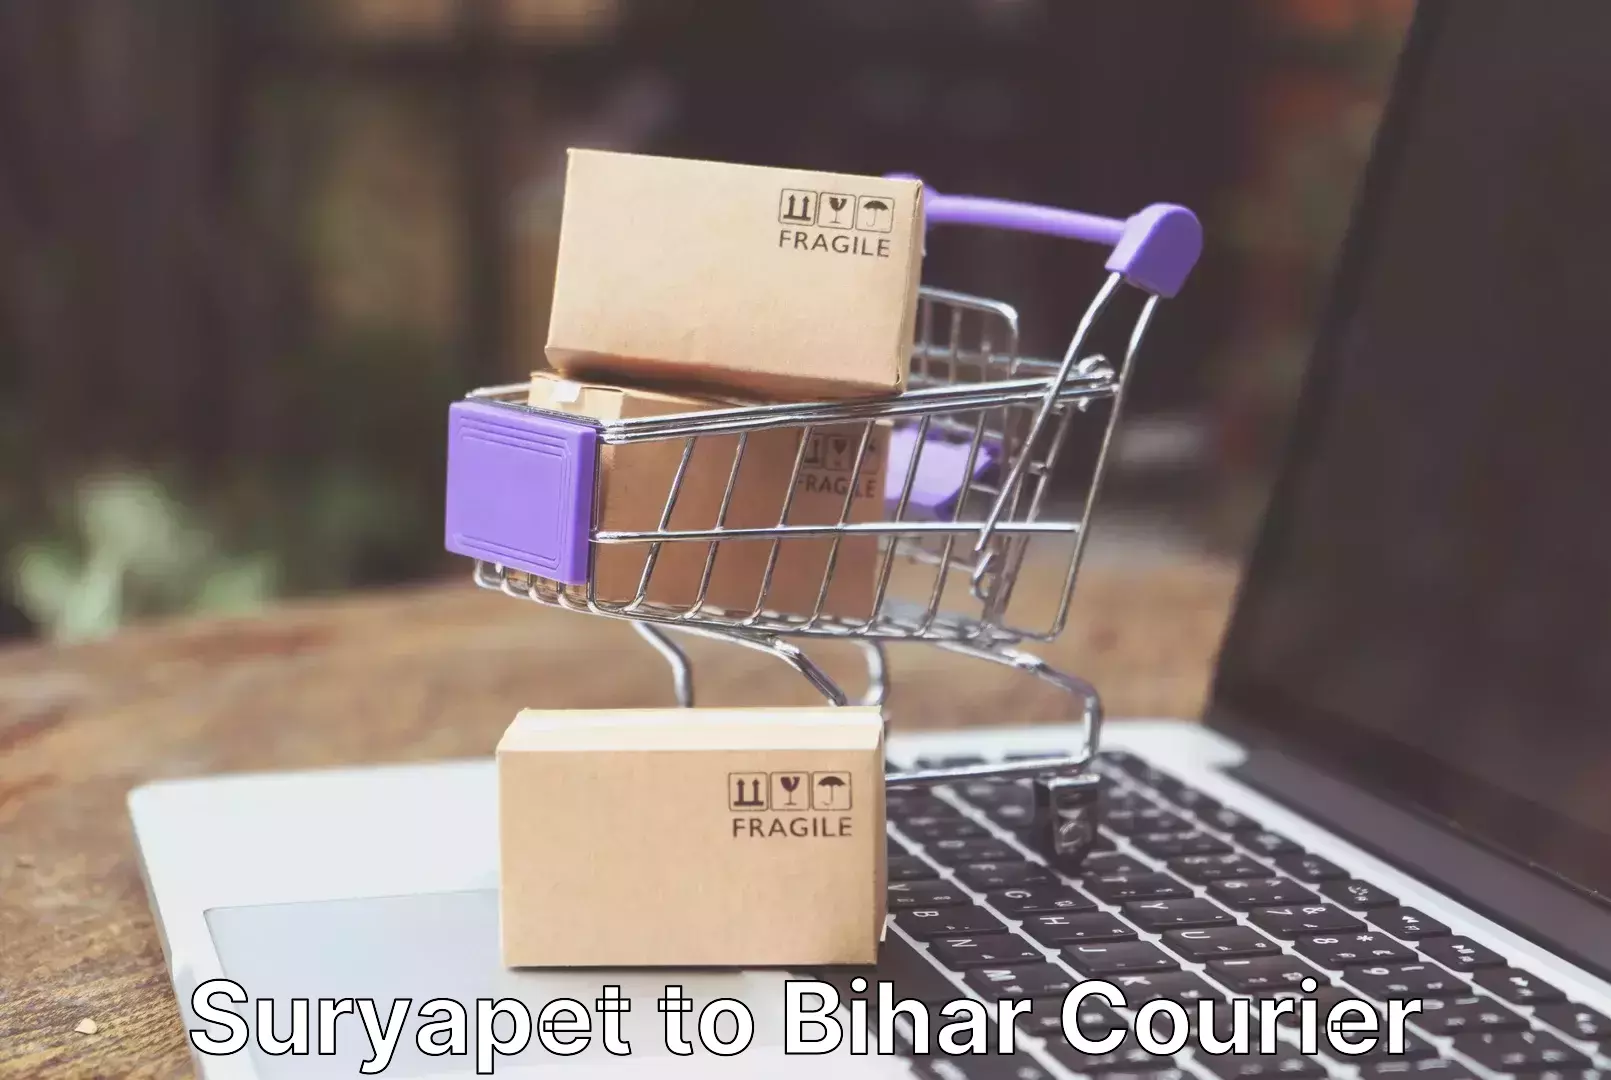 Furniture moving experts Suryapet to Bihar